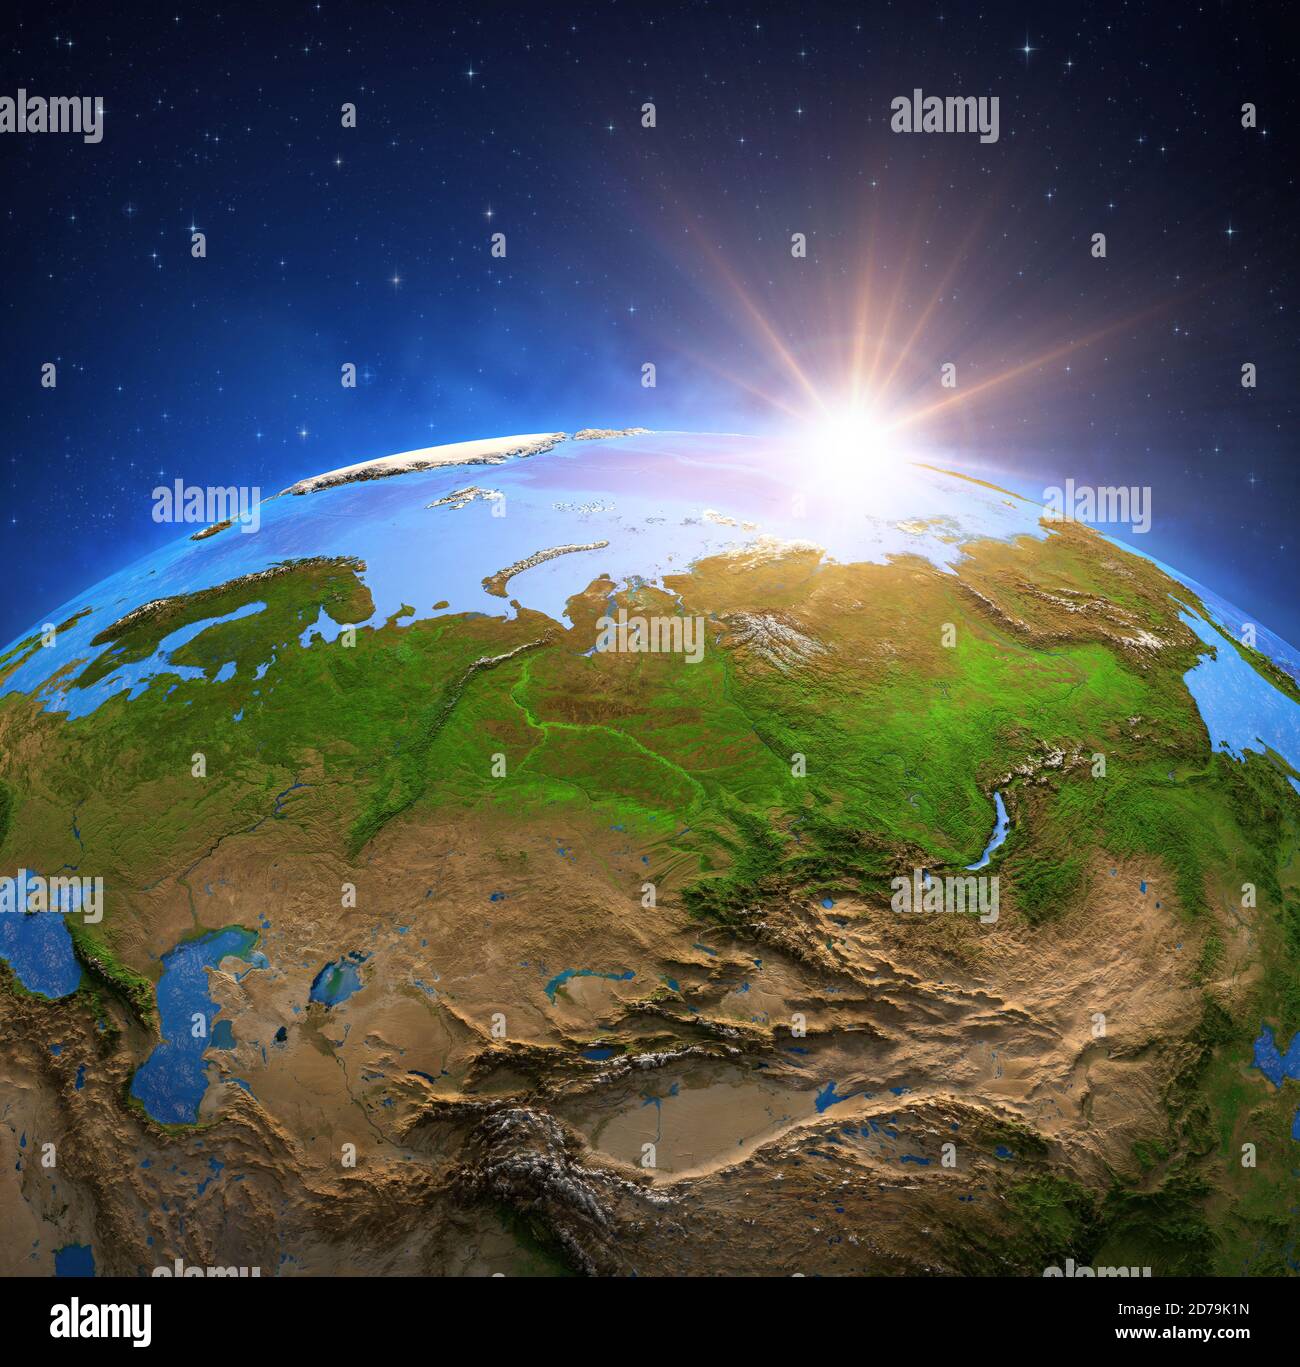 Oberfläche des Planeten Erde von einem Satelliten aus betrachtet, fokussiert auf Russland, Sonnenaufgang auf Sibirien und die Permafrosterwärmung. 3D-Illustration - Elemente der Th Stockfoto